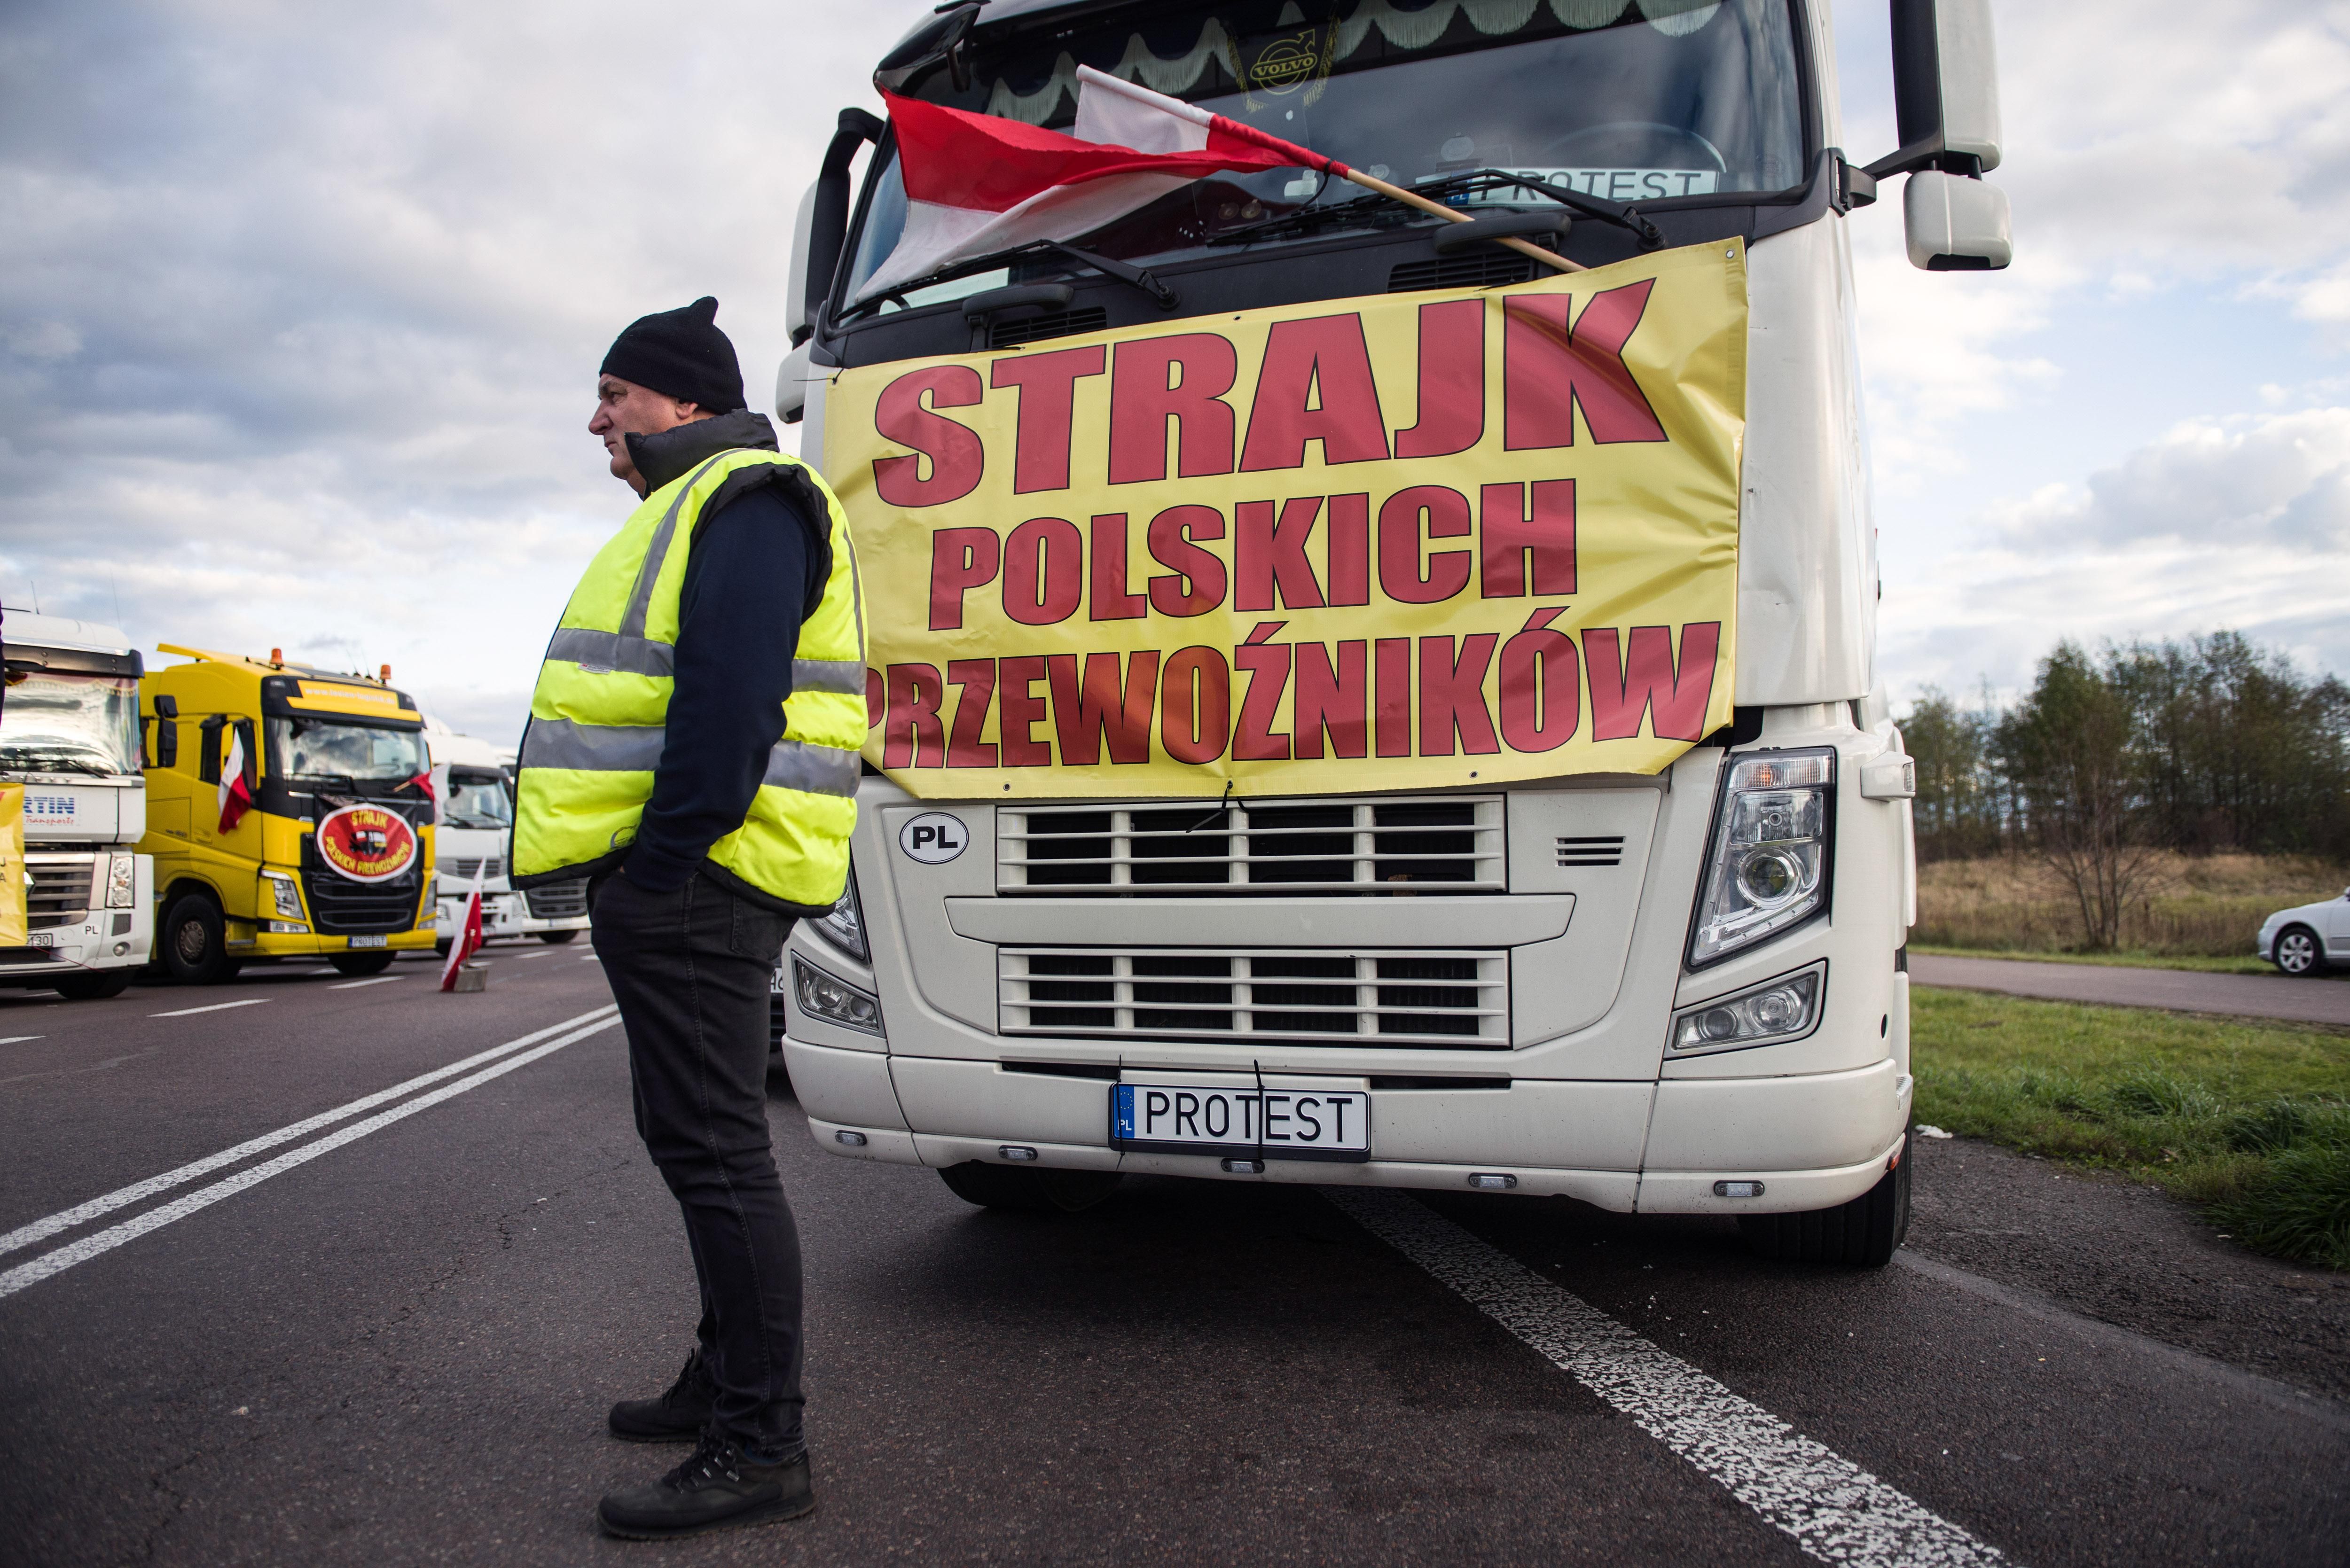 Забастовка польских дальнобойщиков продолжается